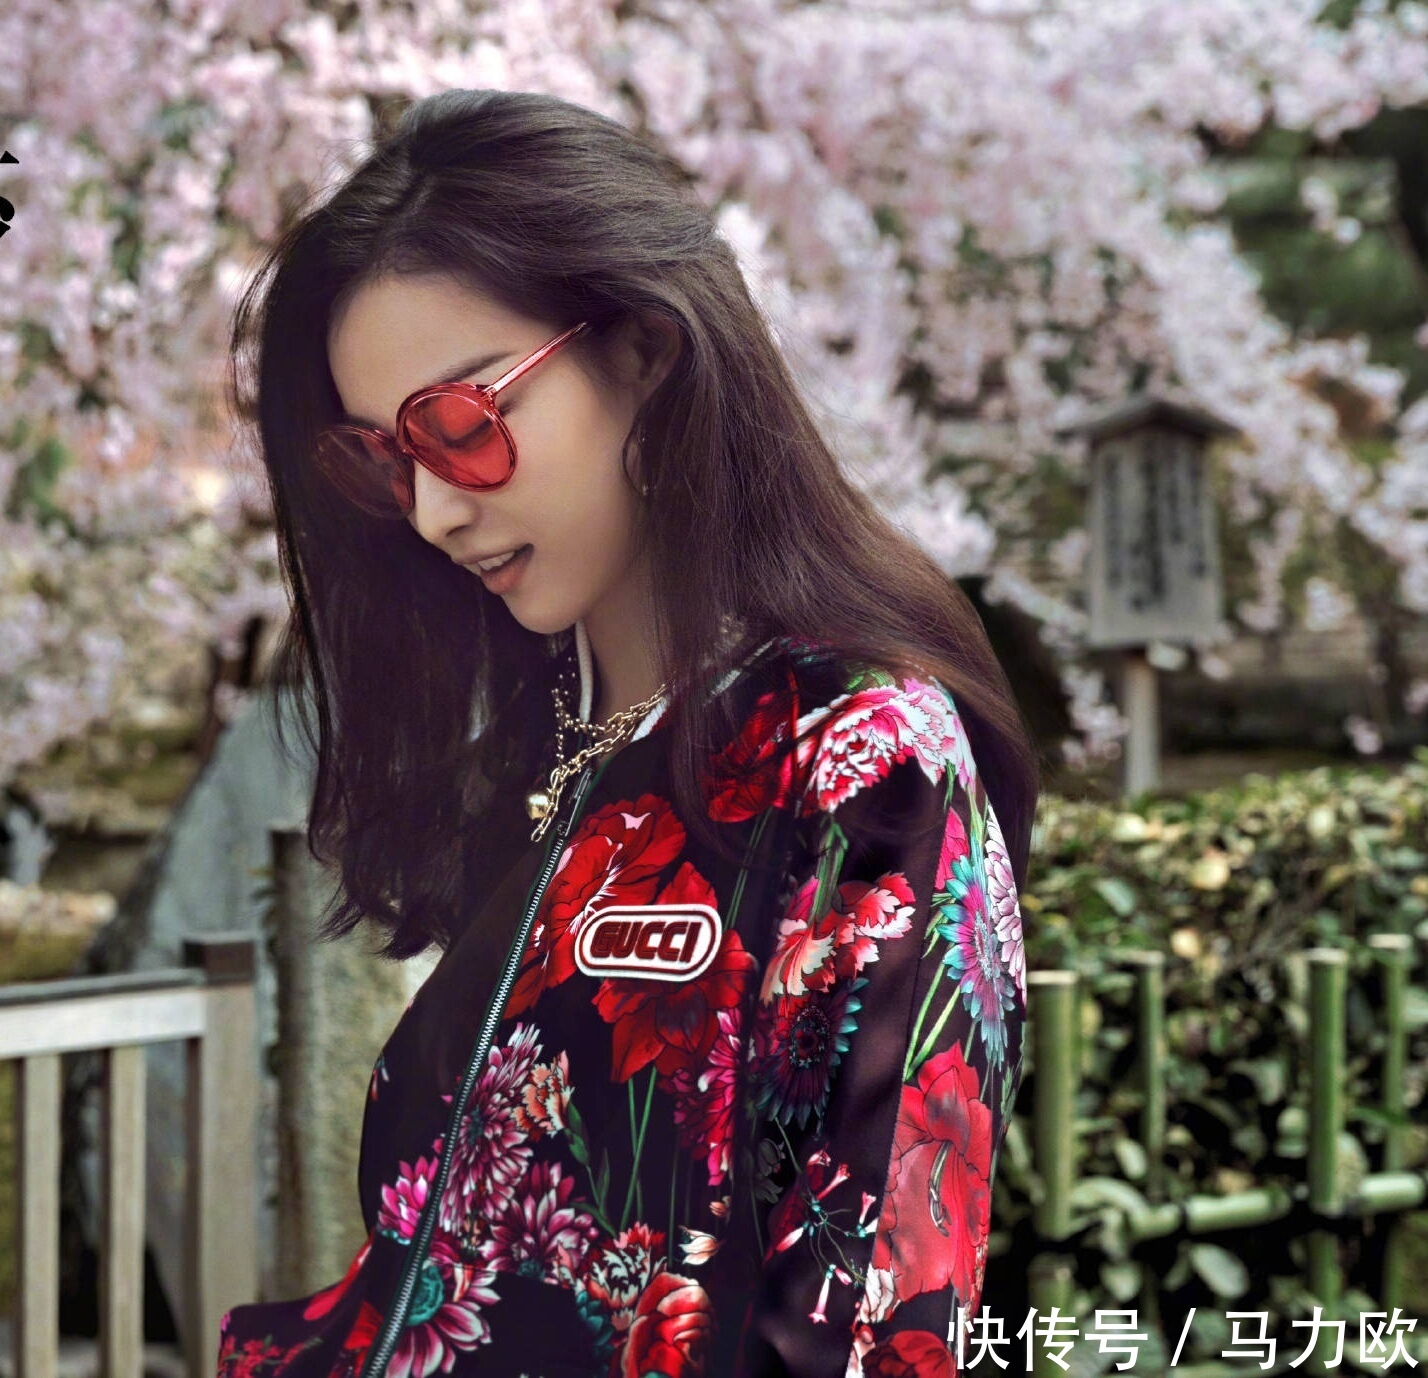 倪妮时尚芭莎五月封面,在樱花盛开的京都,再次